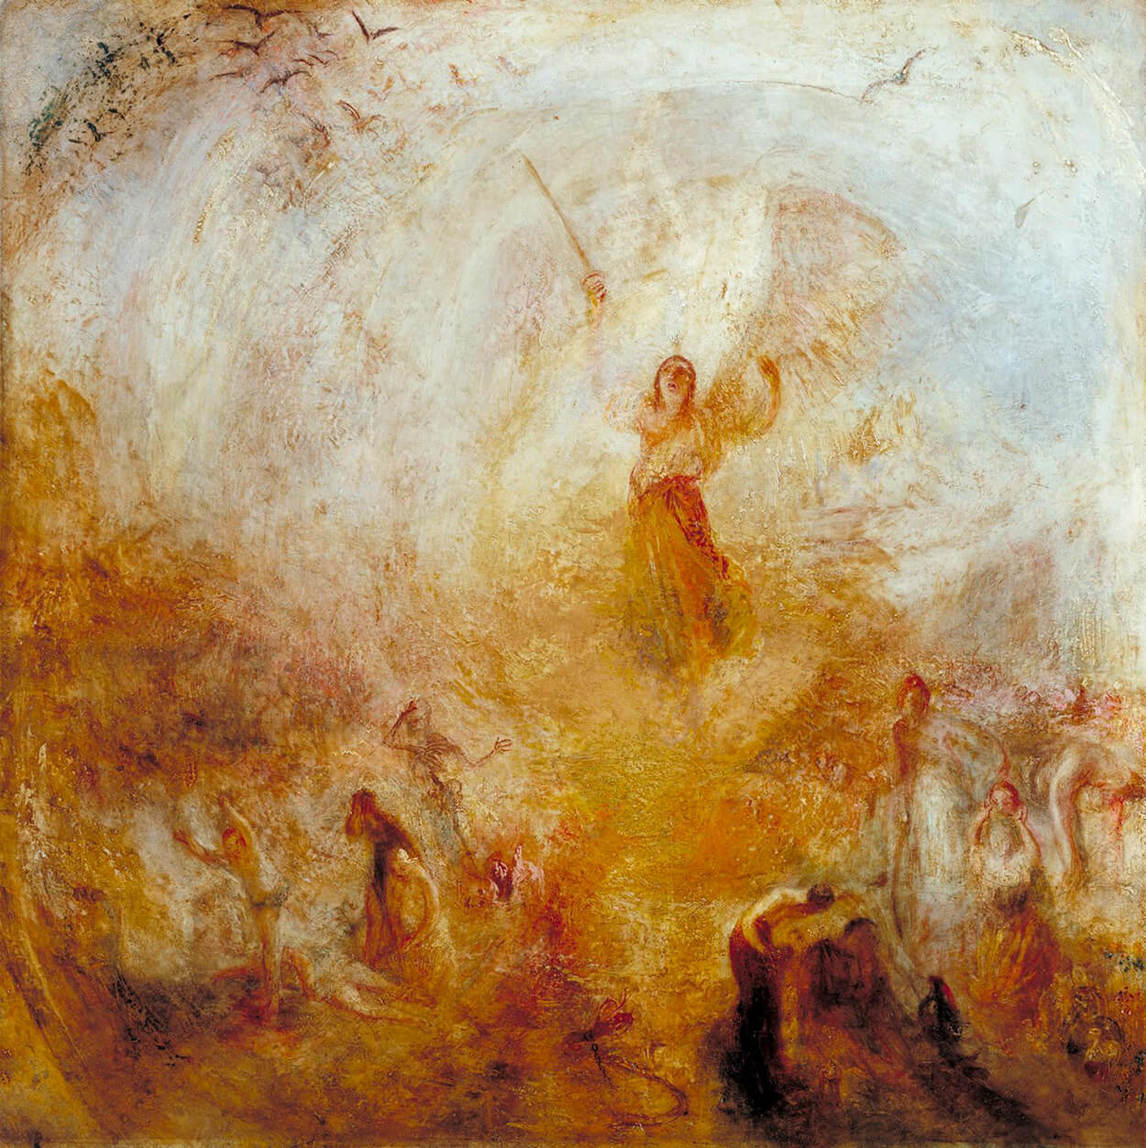 L’Ange debout dans le soleil, v. 1846, par J. M. W. Turner